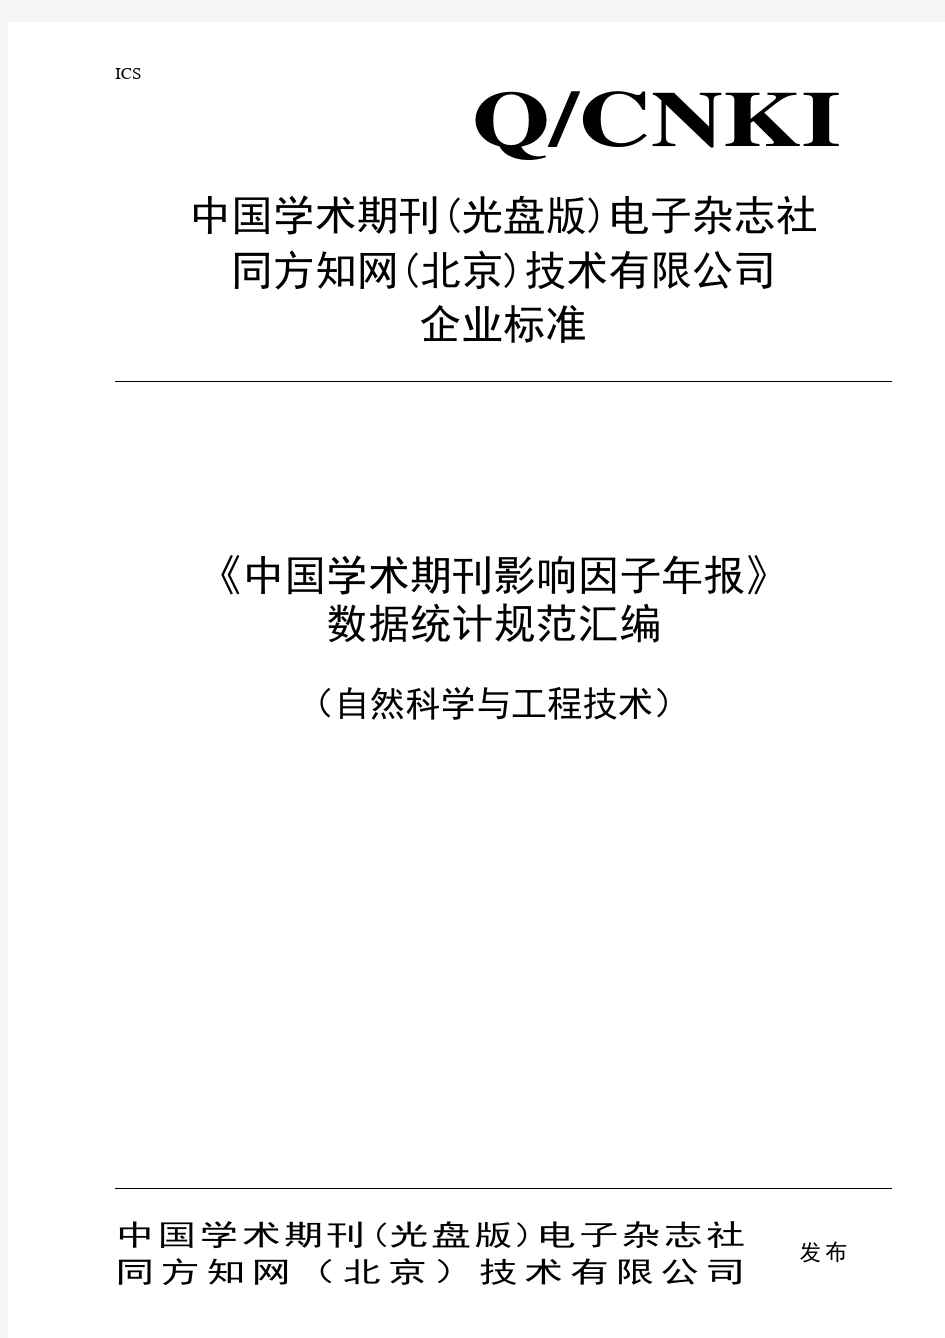 《中国学术期刊影响因子年报(自然科学与工程技术)》系列标准11291730